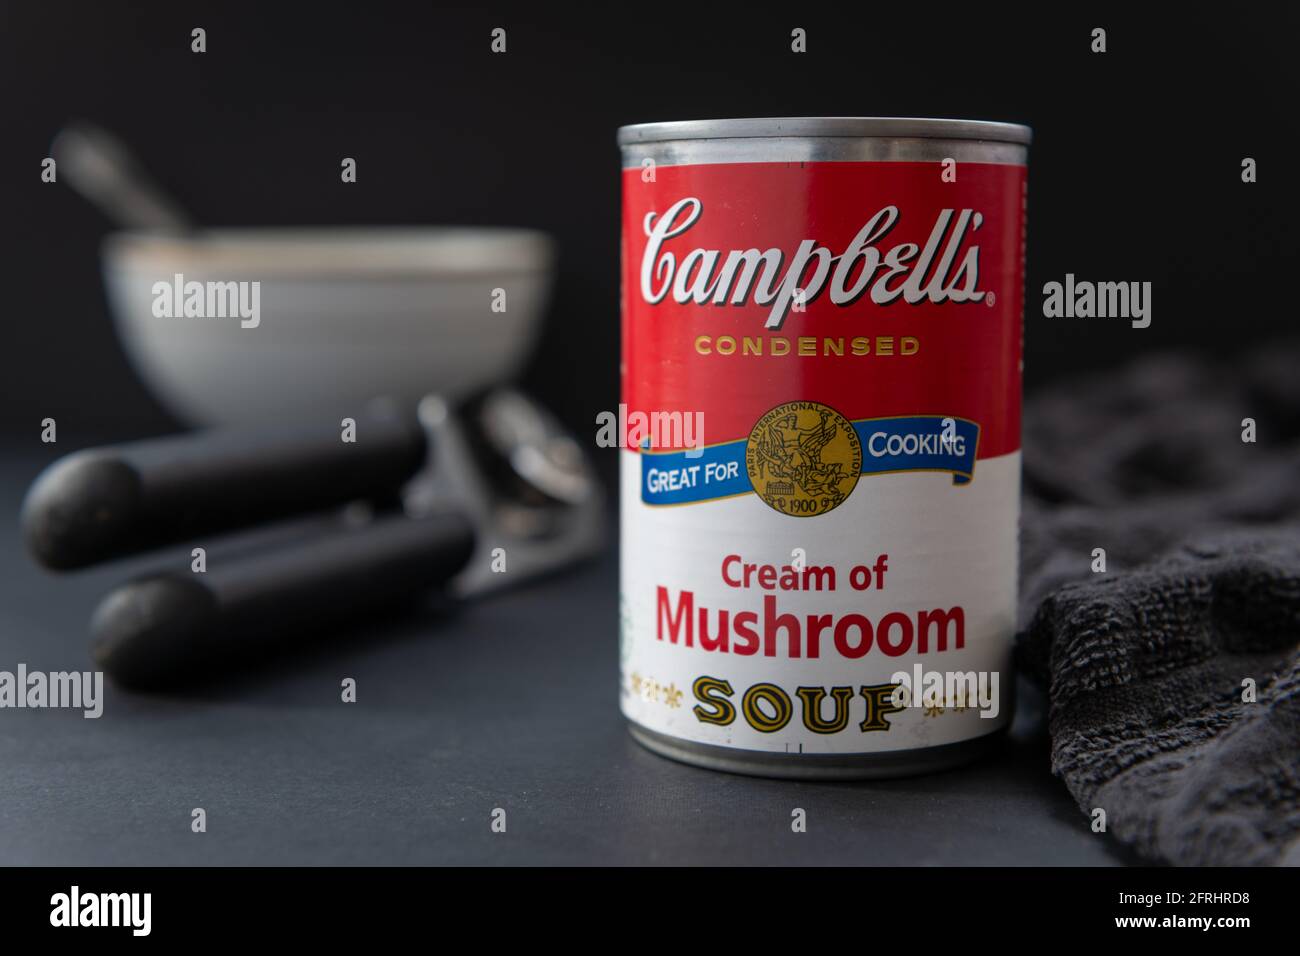 London. UK- 05.16.2021: Eine Dose Campbell's Pilzcreme auf einem Tisch mit dunklem Hintergrund. Stockfoto